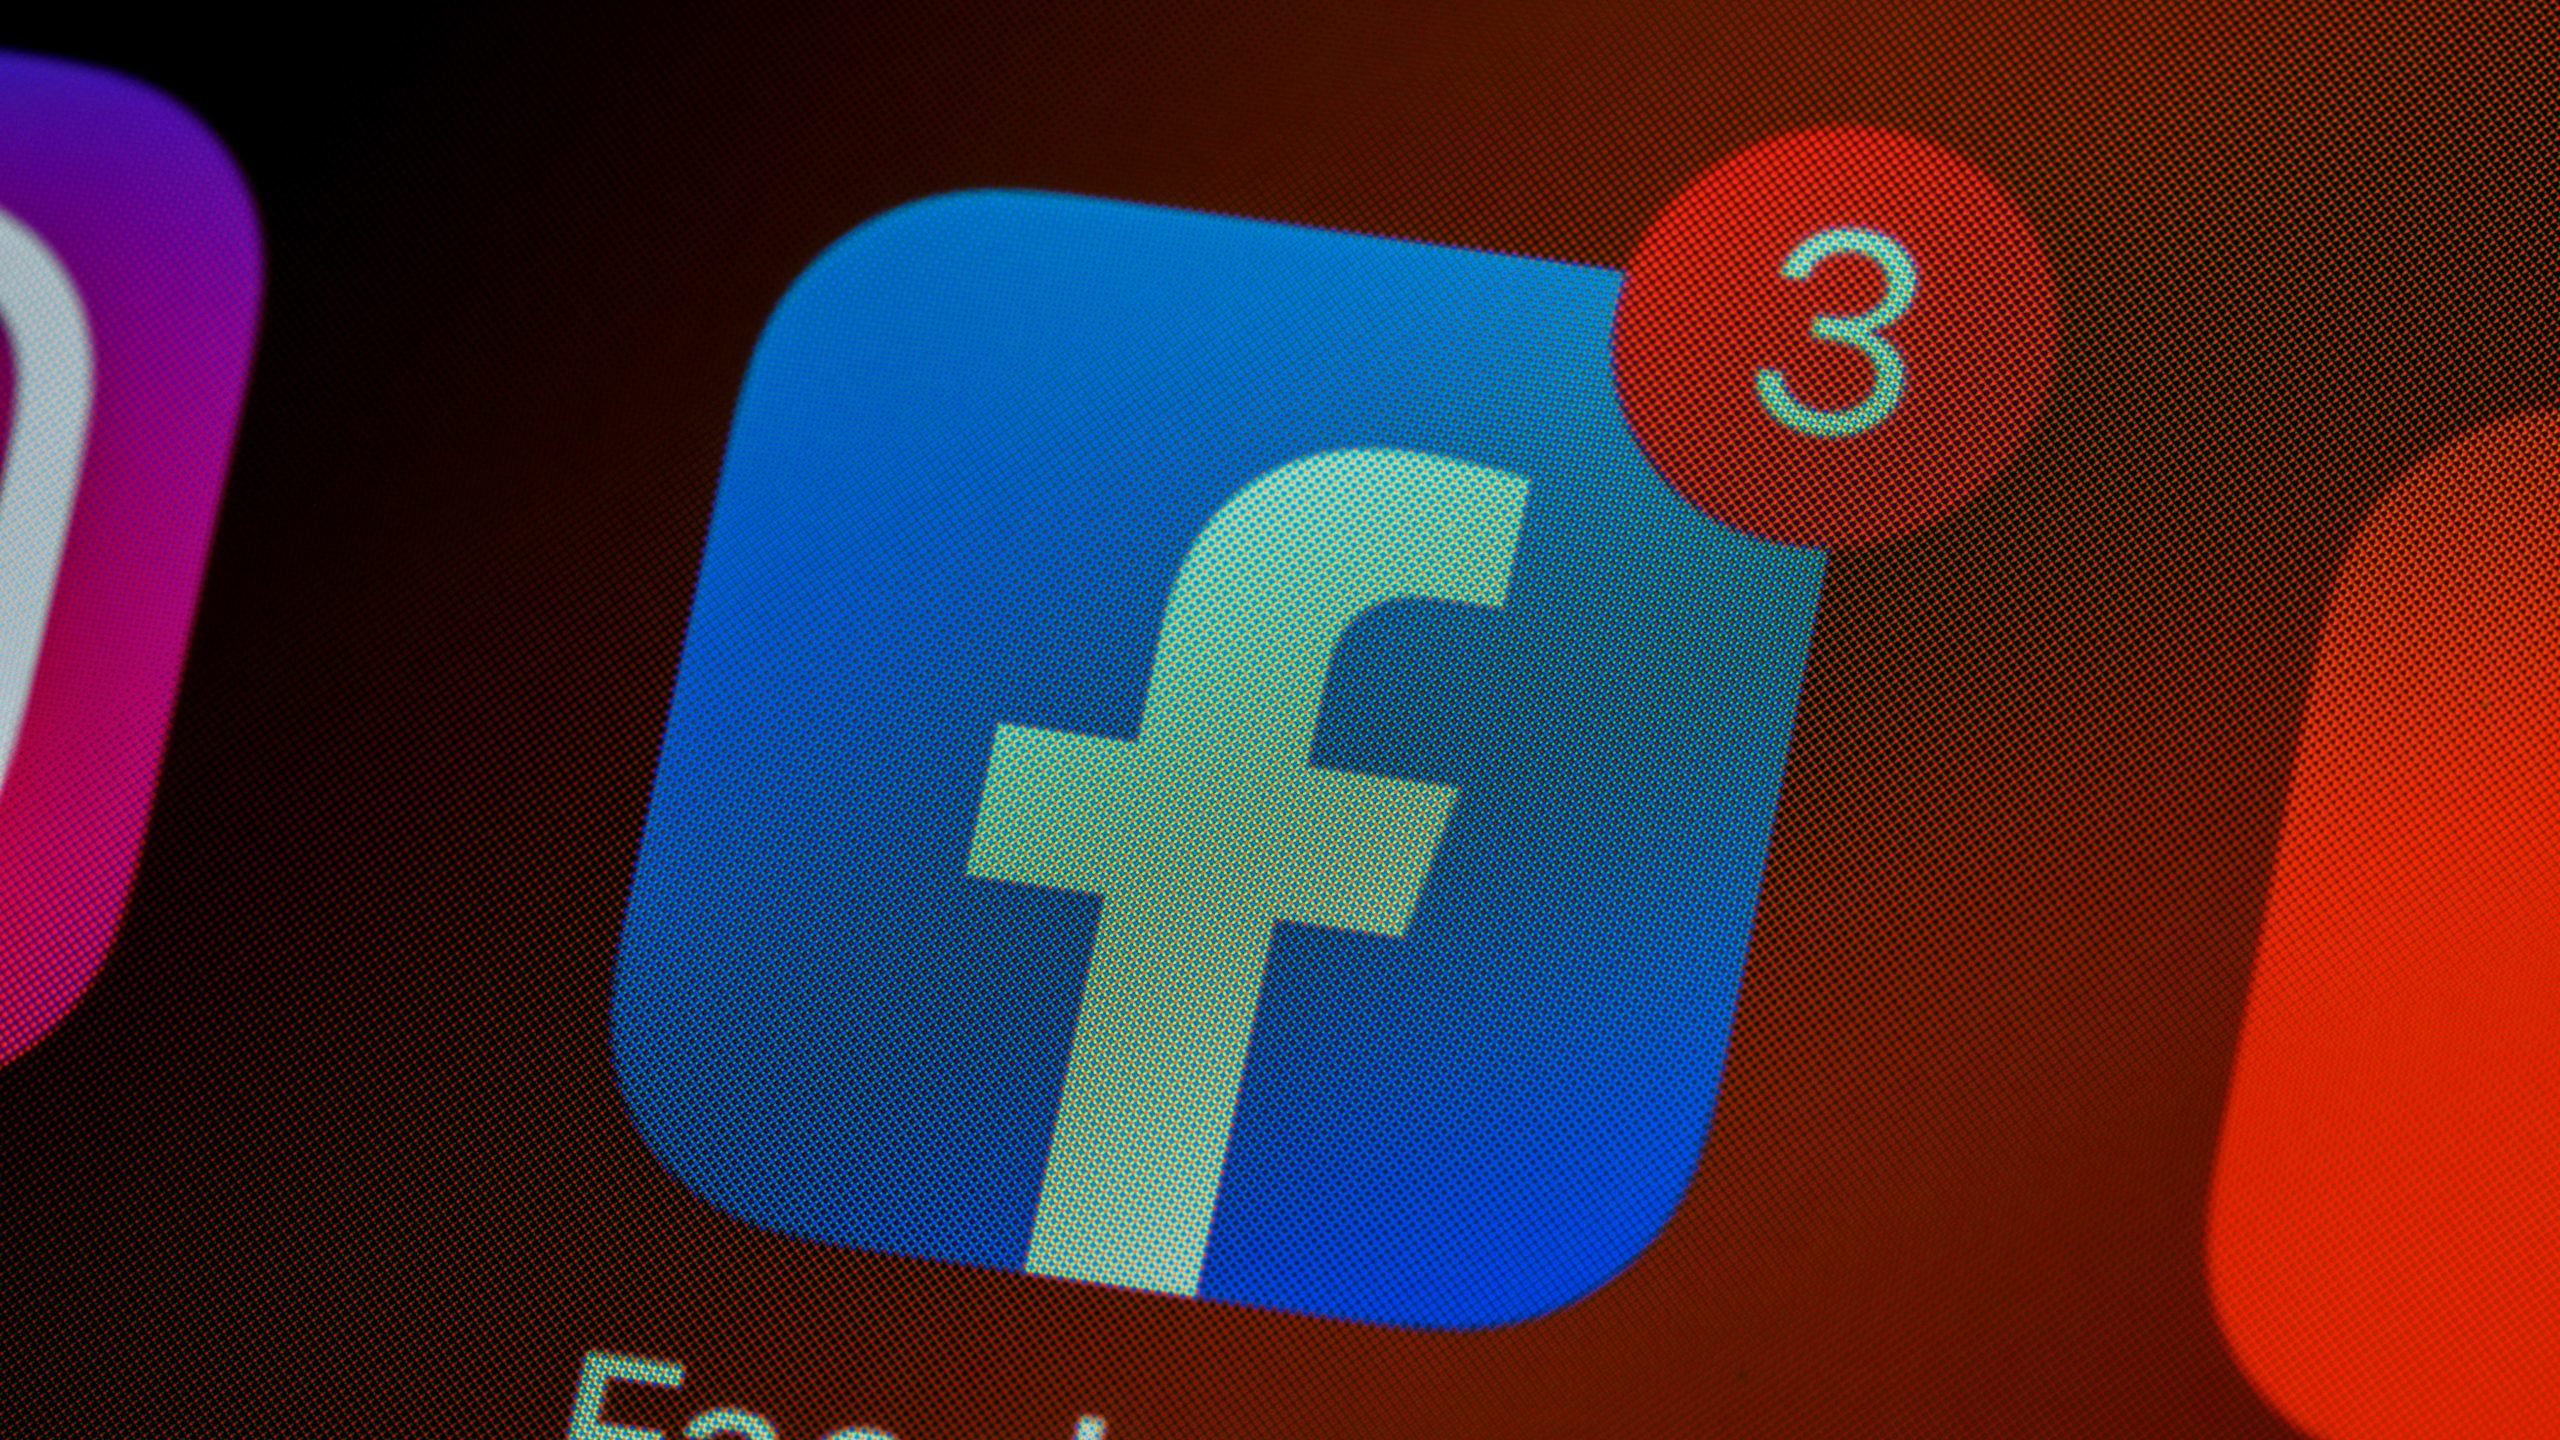 Vazamento do Facebook é investigado por suspeita de violar GDPR | Legislação